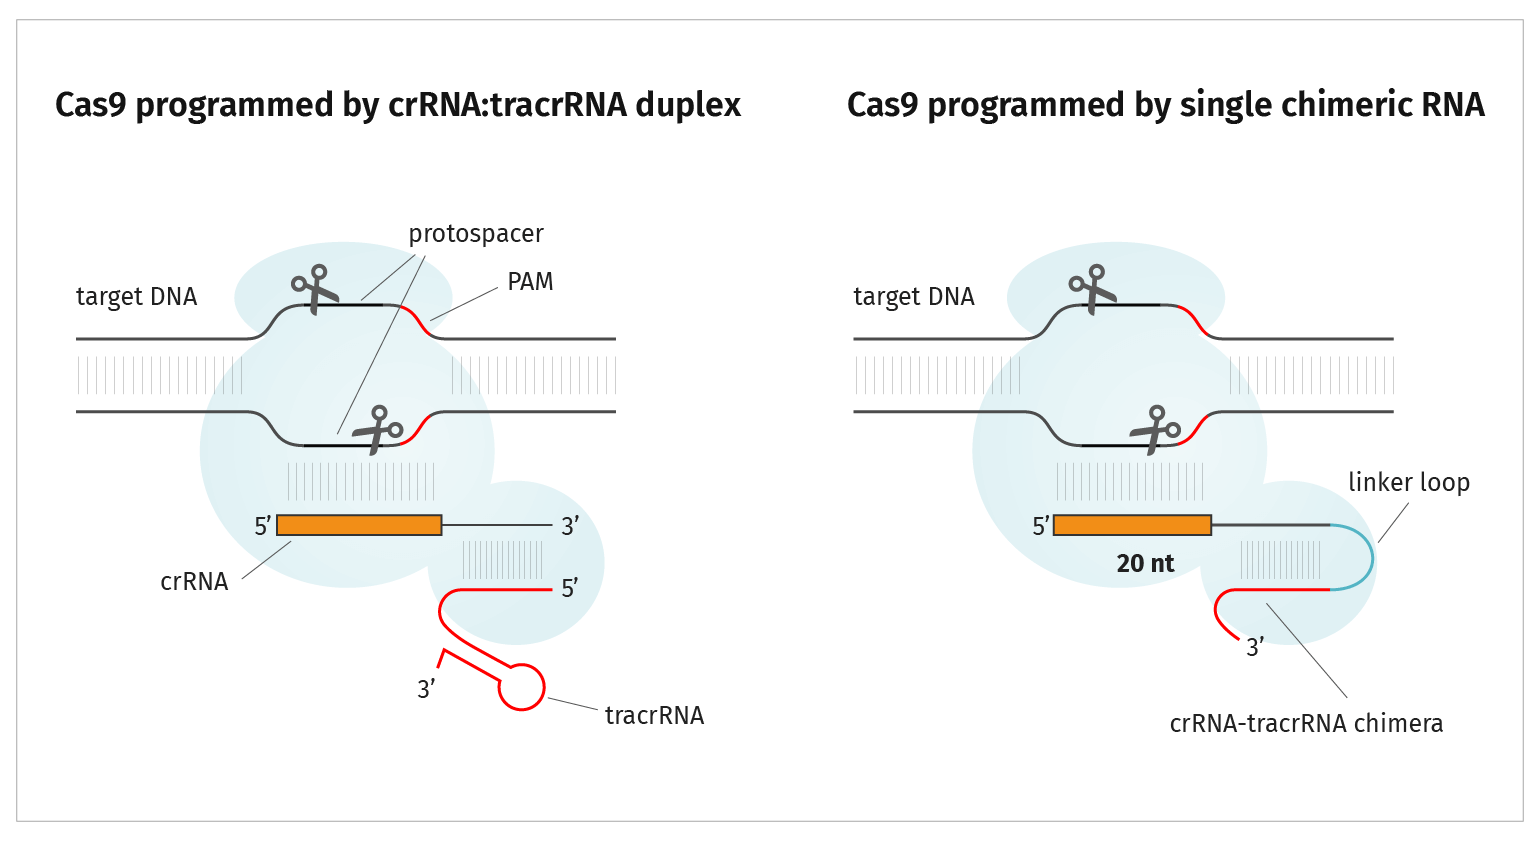 Figure 1: Cas9 programmed by crRNA:tracrRNA duplex vs a single chimeric RNA